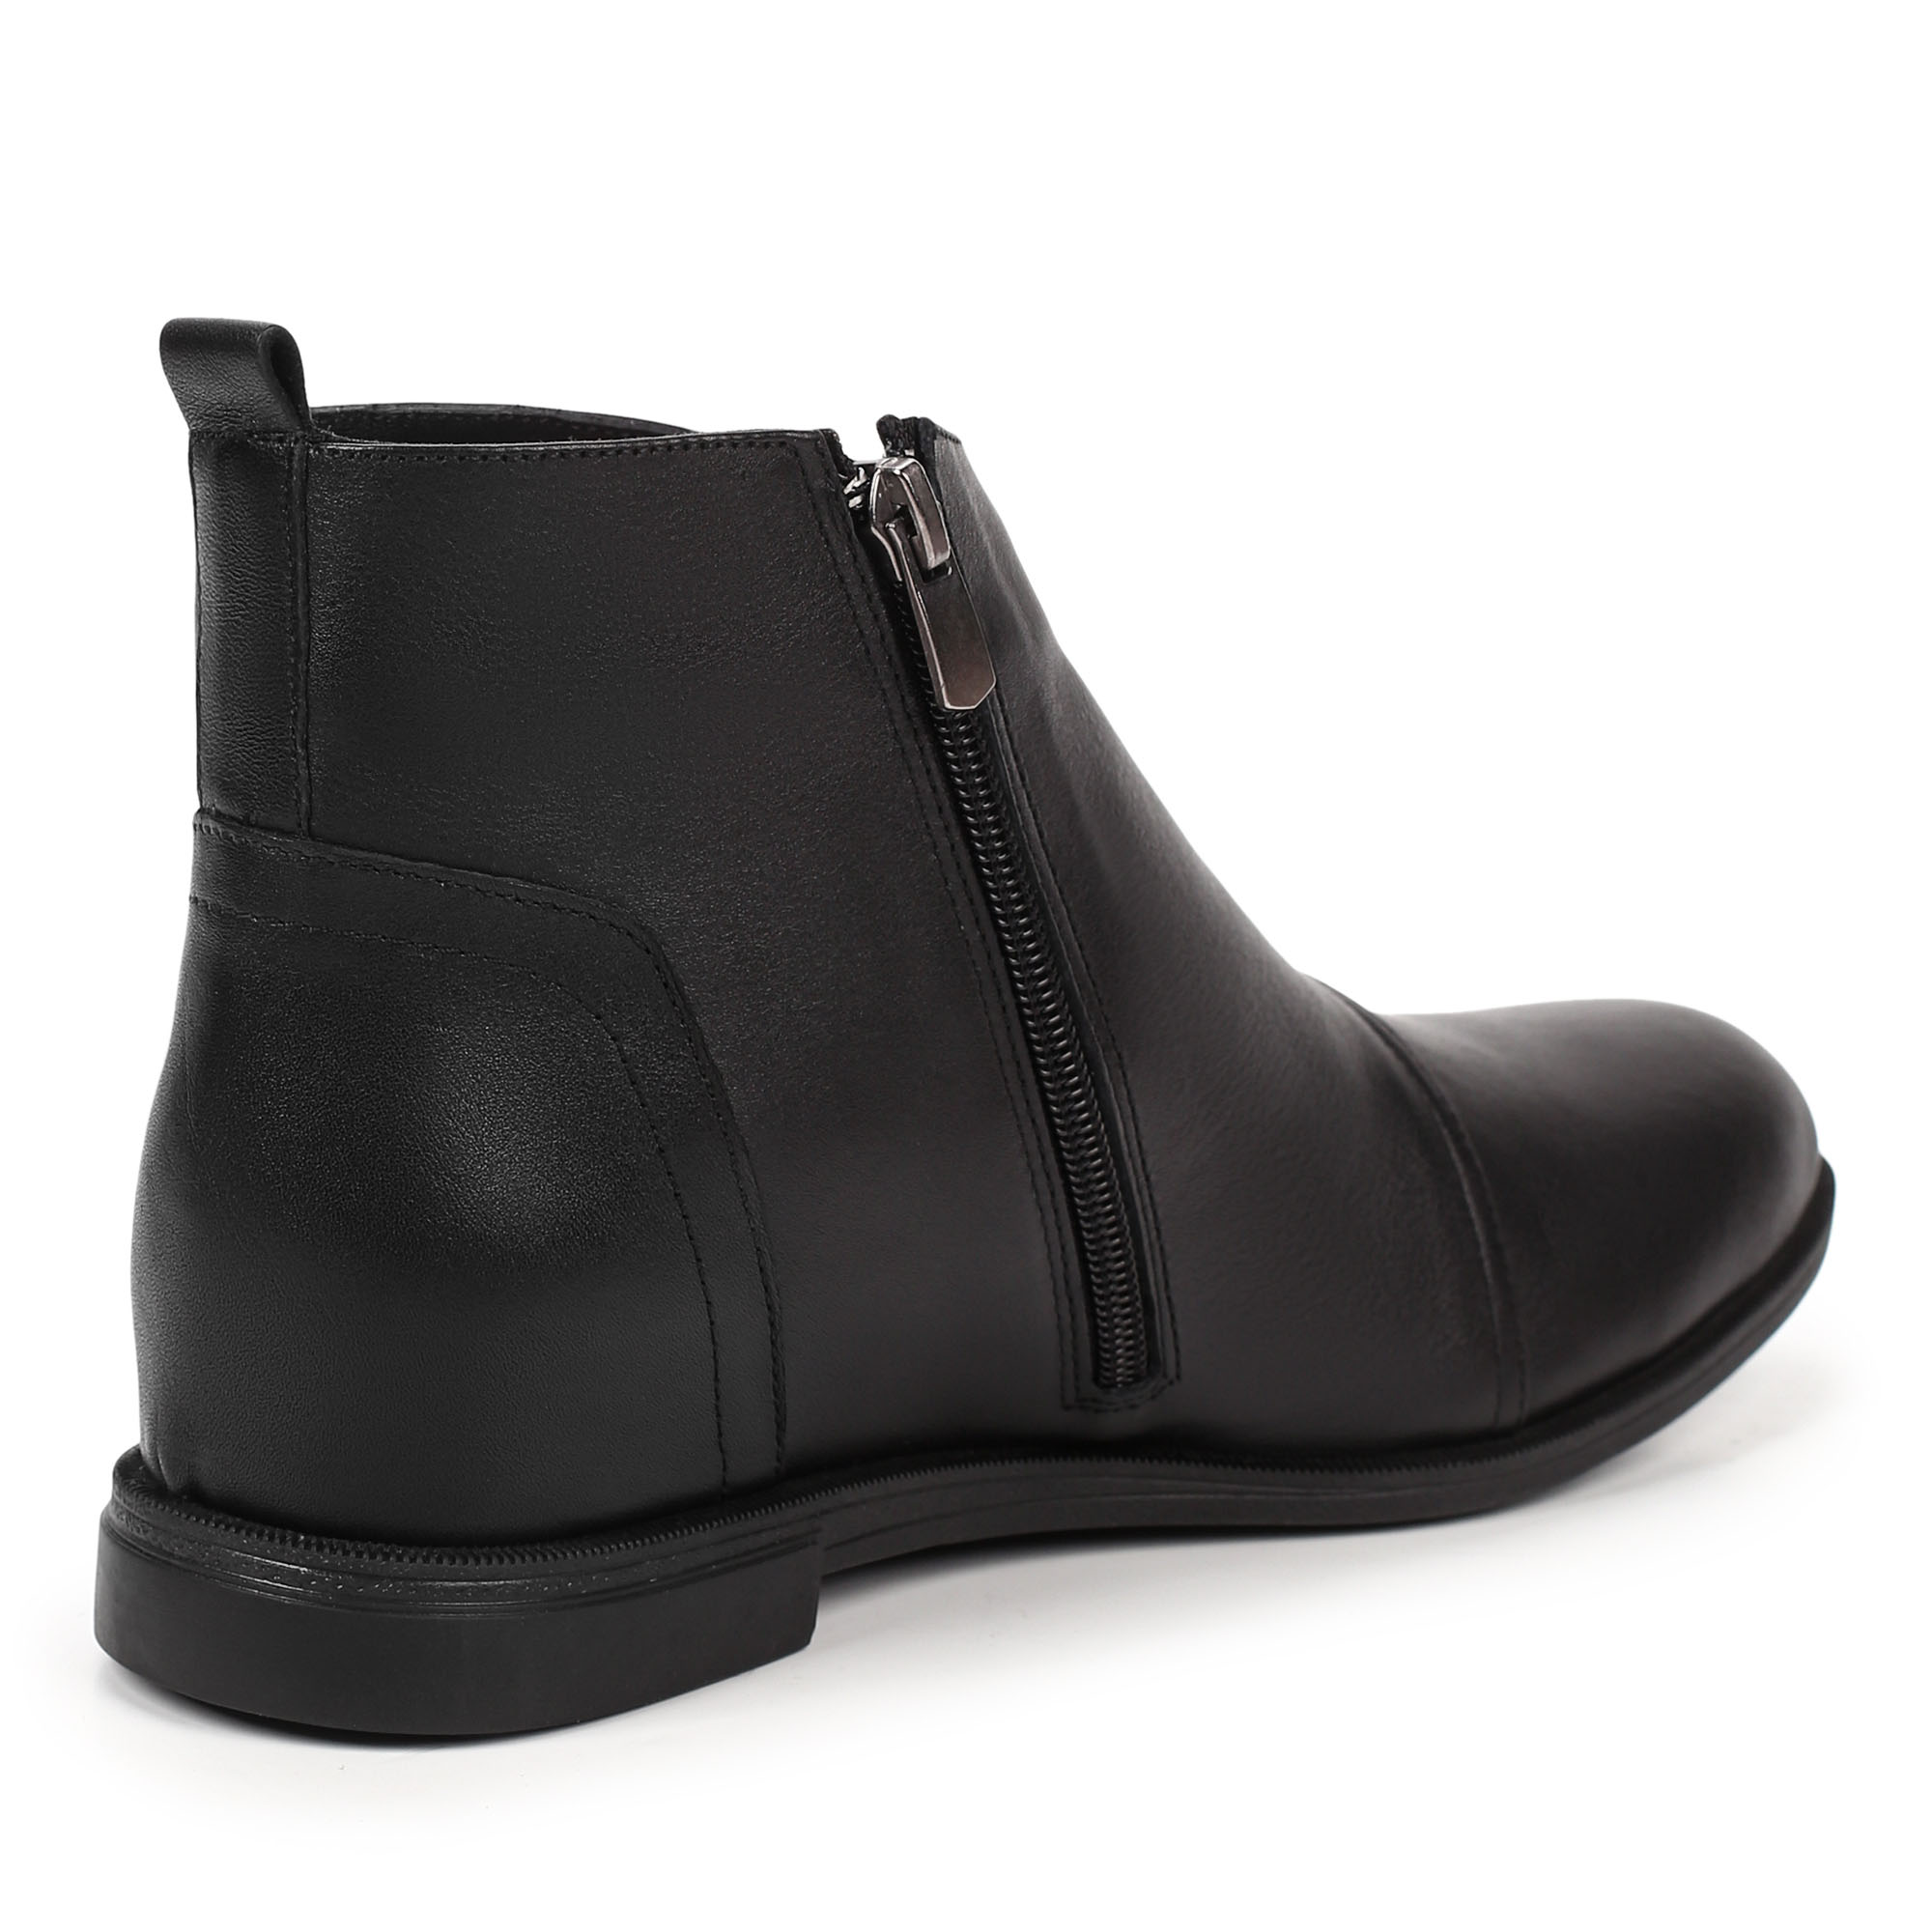 Ботинки Thomas Munz 539-014A-2102, цвет черный, размер 39 - фото 3